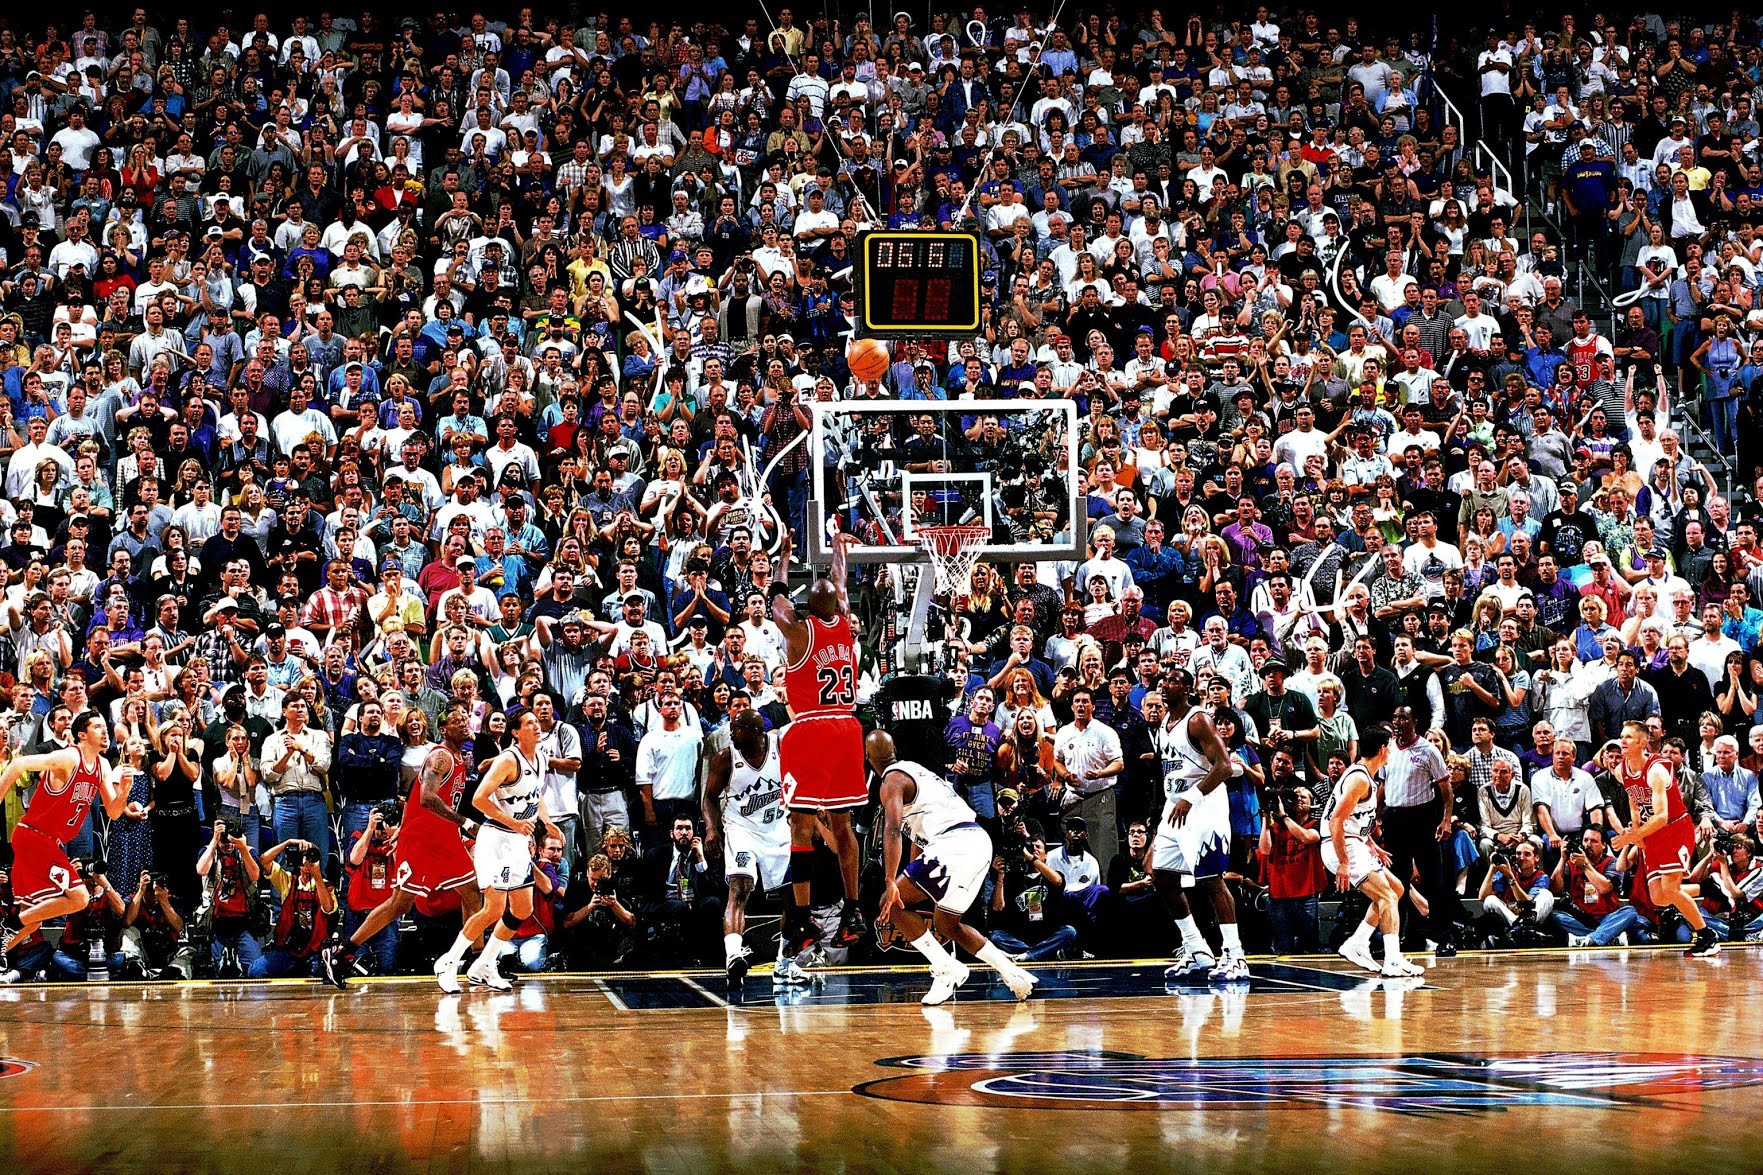 Đã là fan bóng rổ nhất định phải biết ý nghĩa 12 bức ảnh bất tử trong lịch sử NBA - Ảnh 23.